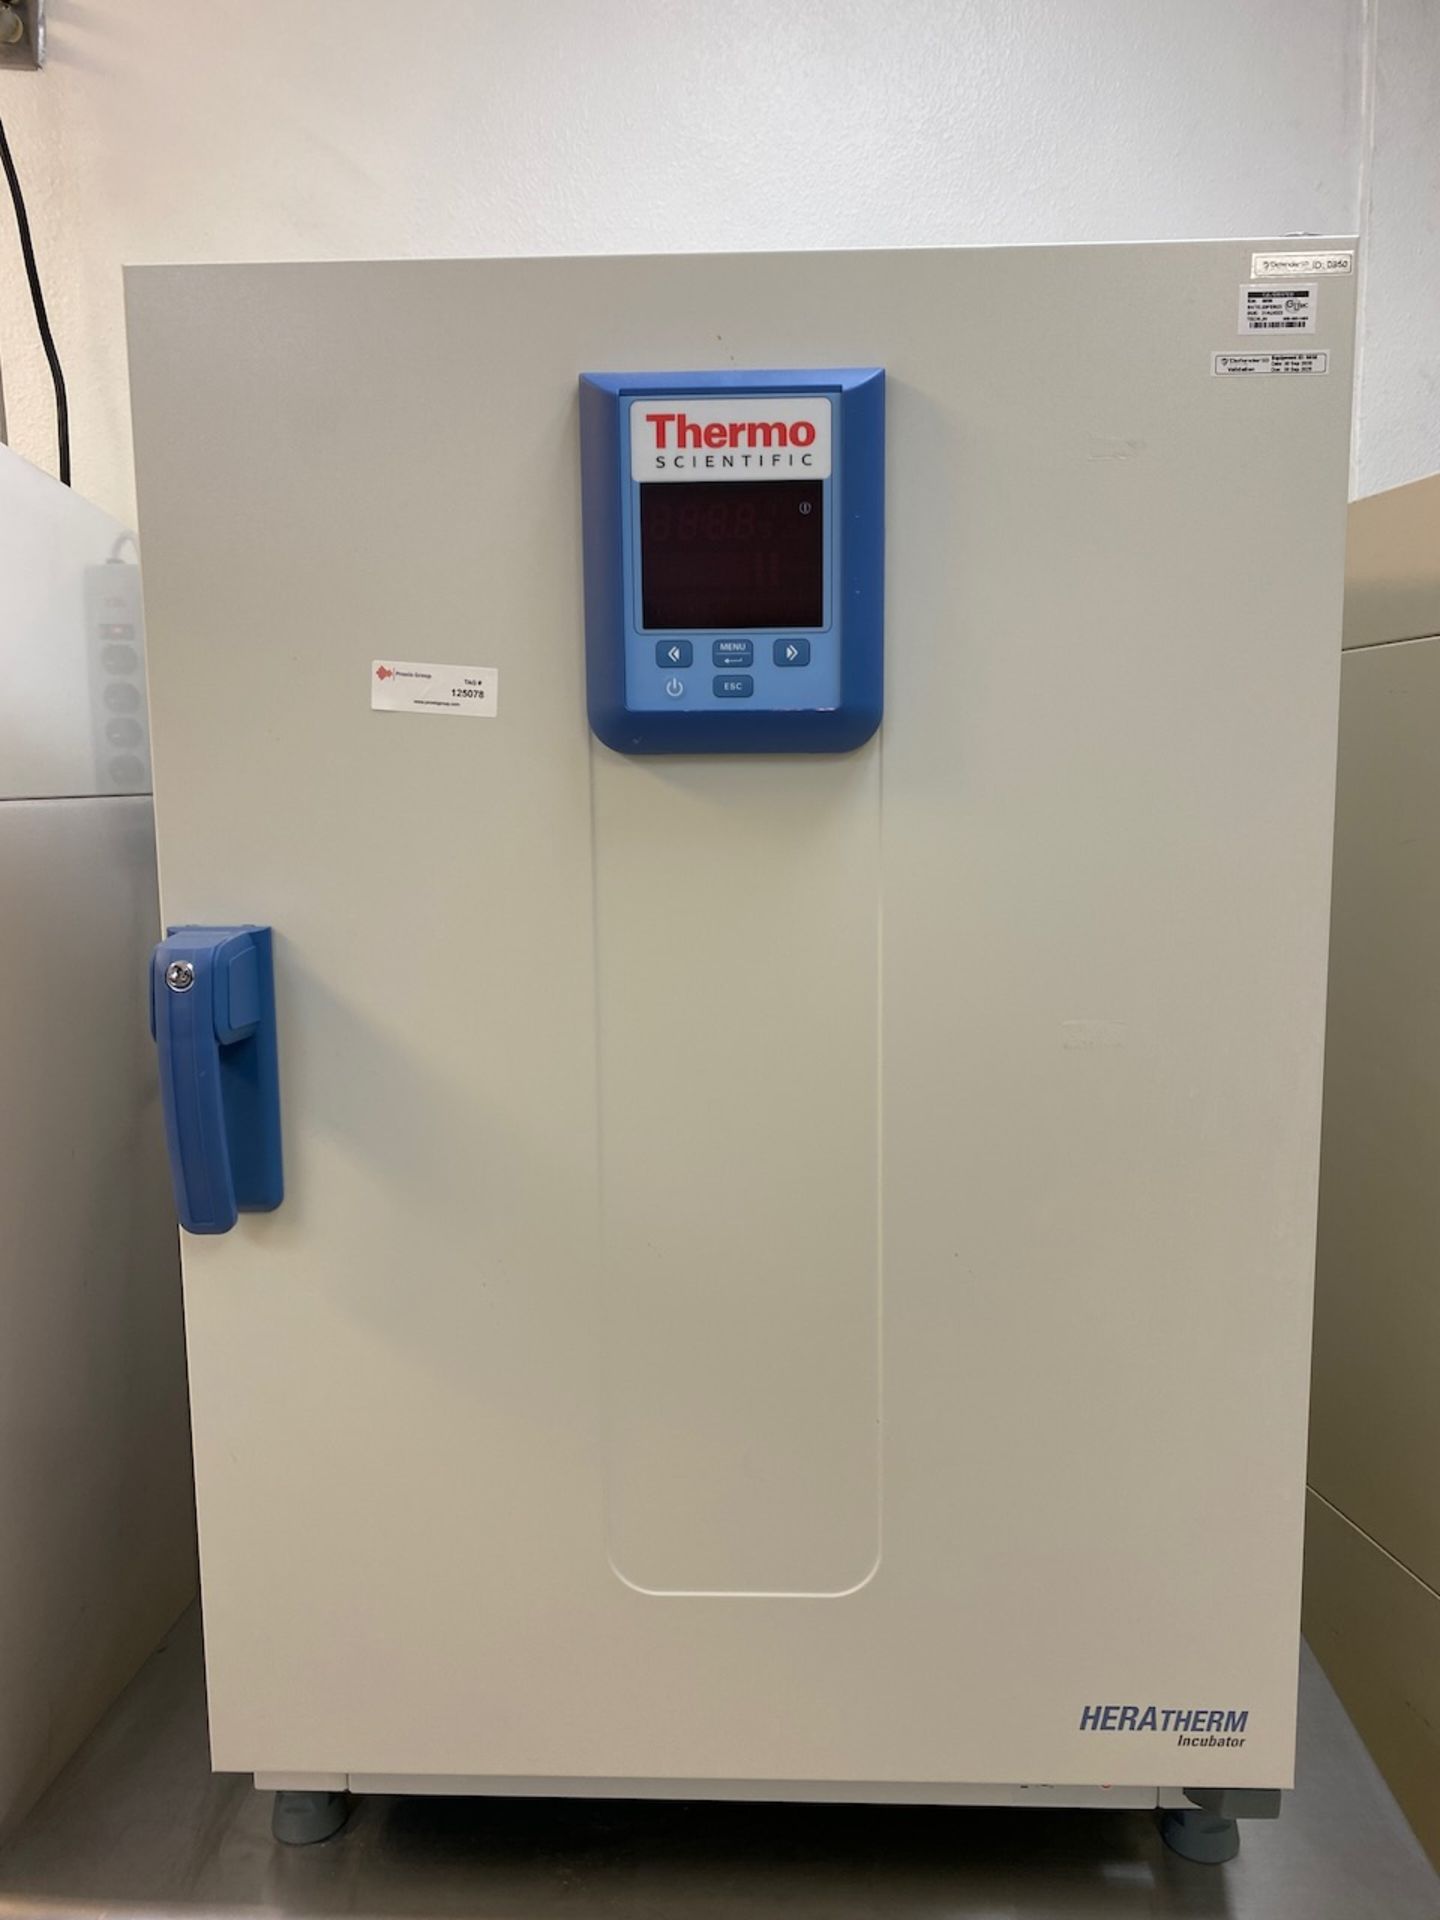 2018 Thermo Scientific Heratherm Incubator